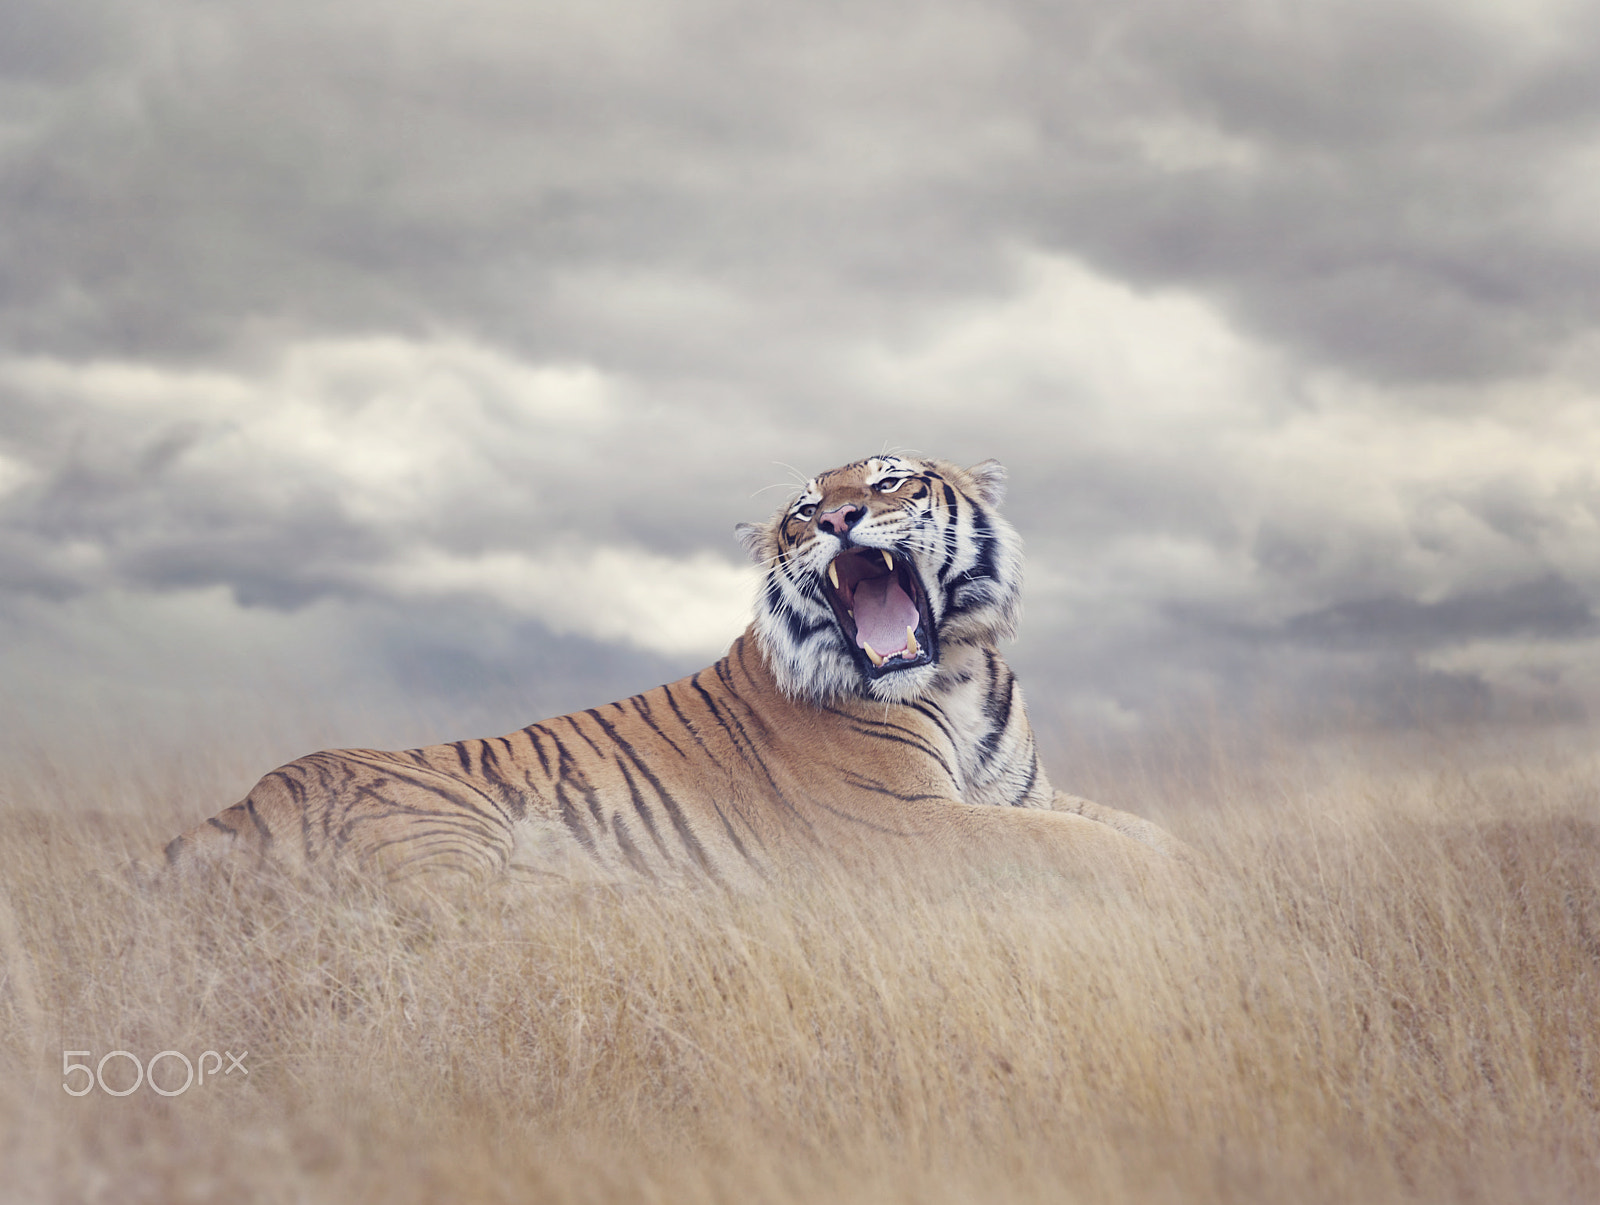 Nikon D800 + Nikon AF-S Nikkor 300mm F4D ED-IF sample photo. Bengal tiger roaring photography